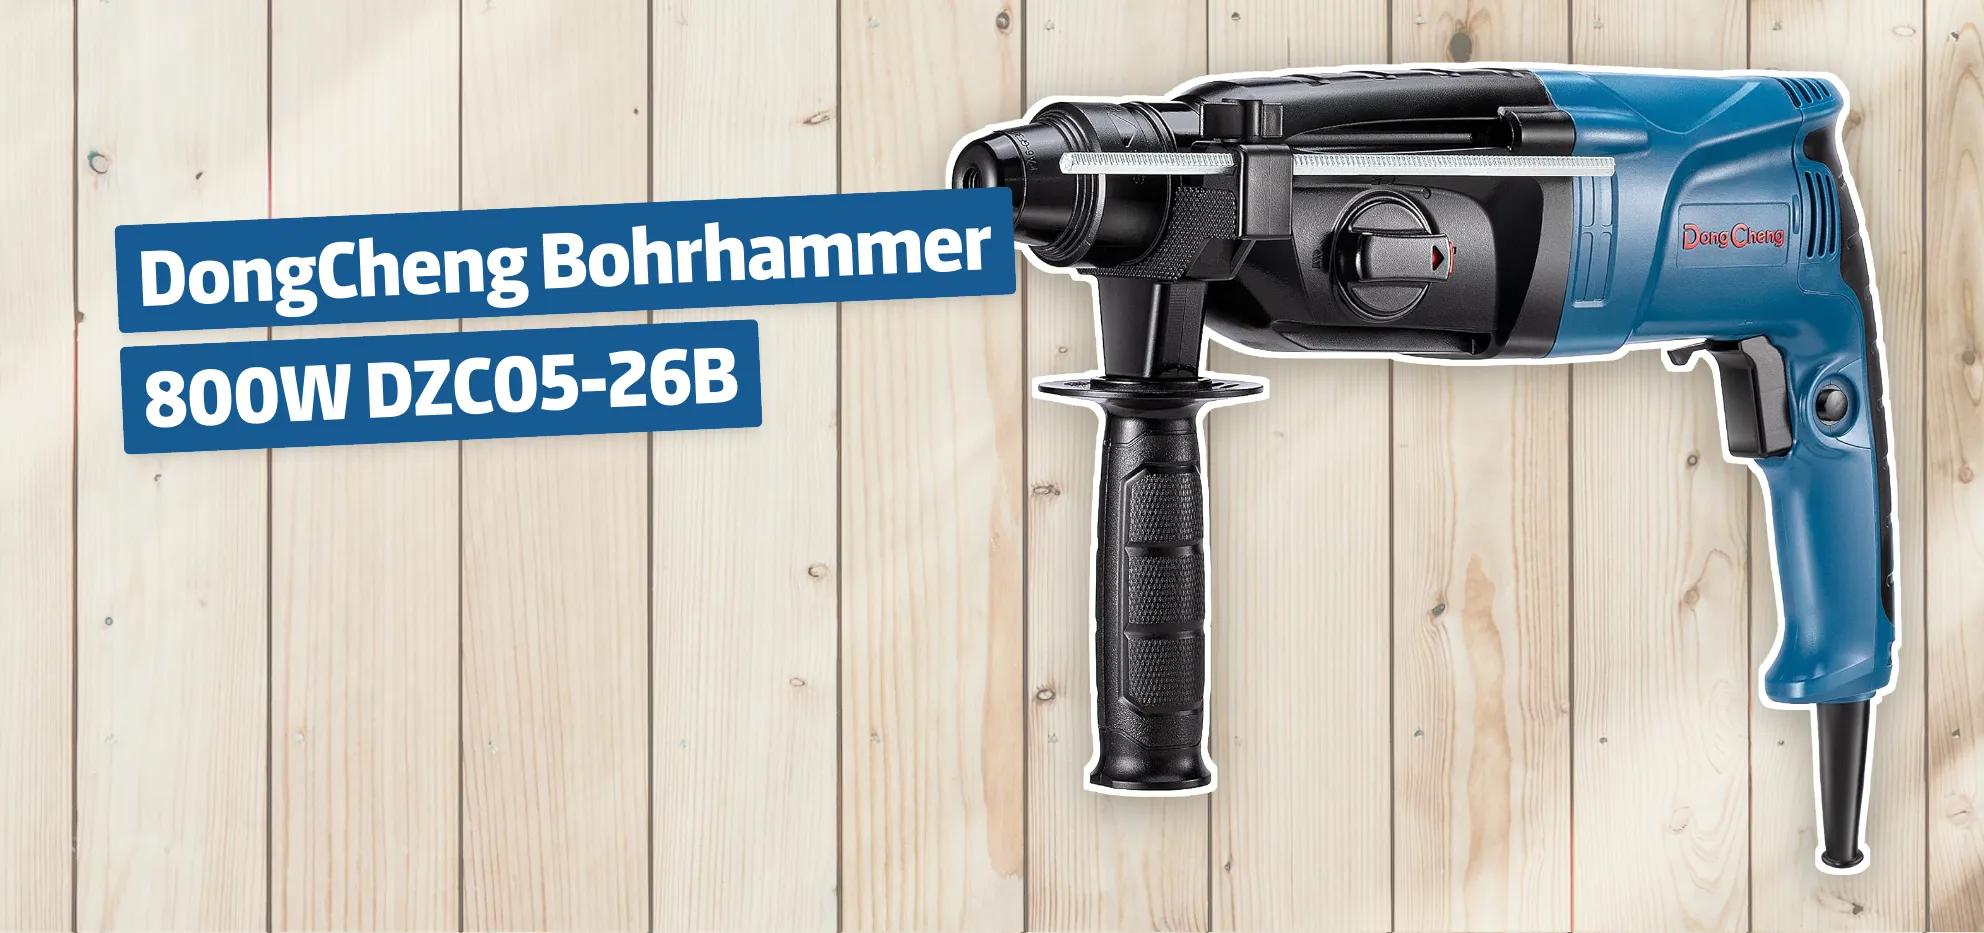 DongCheng Bohrhammer 800W DZC05-26B